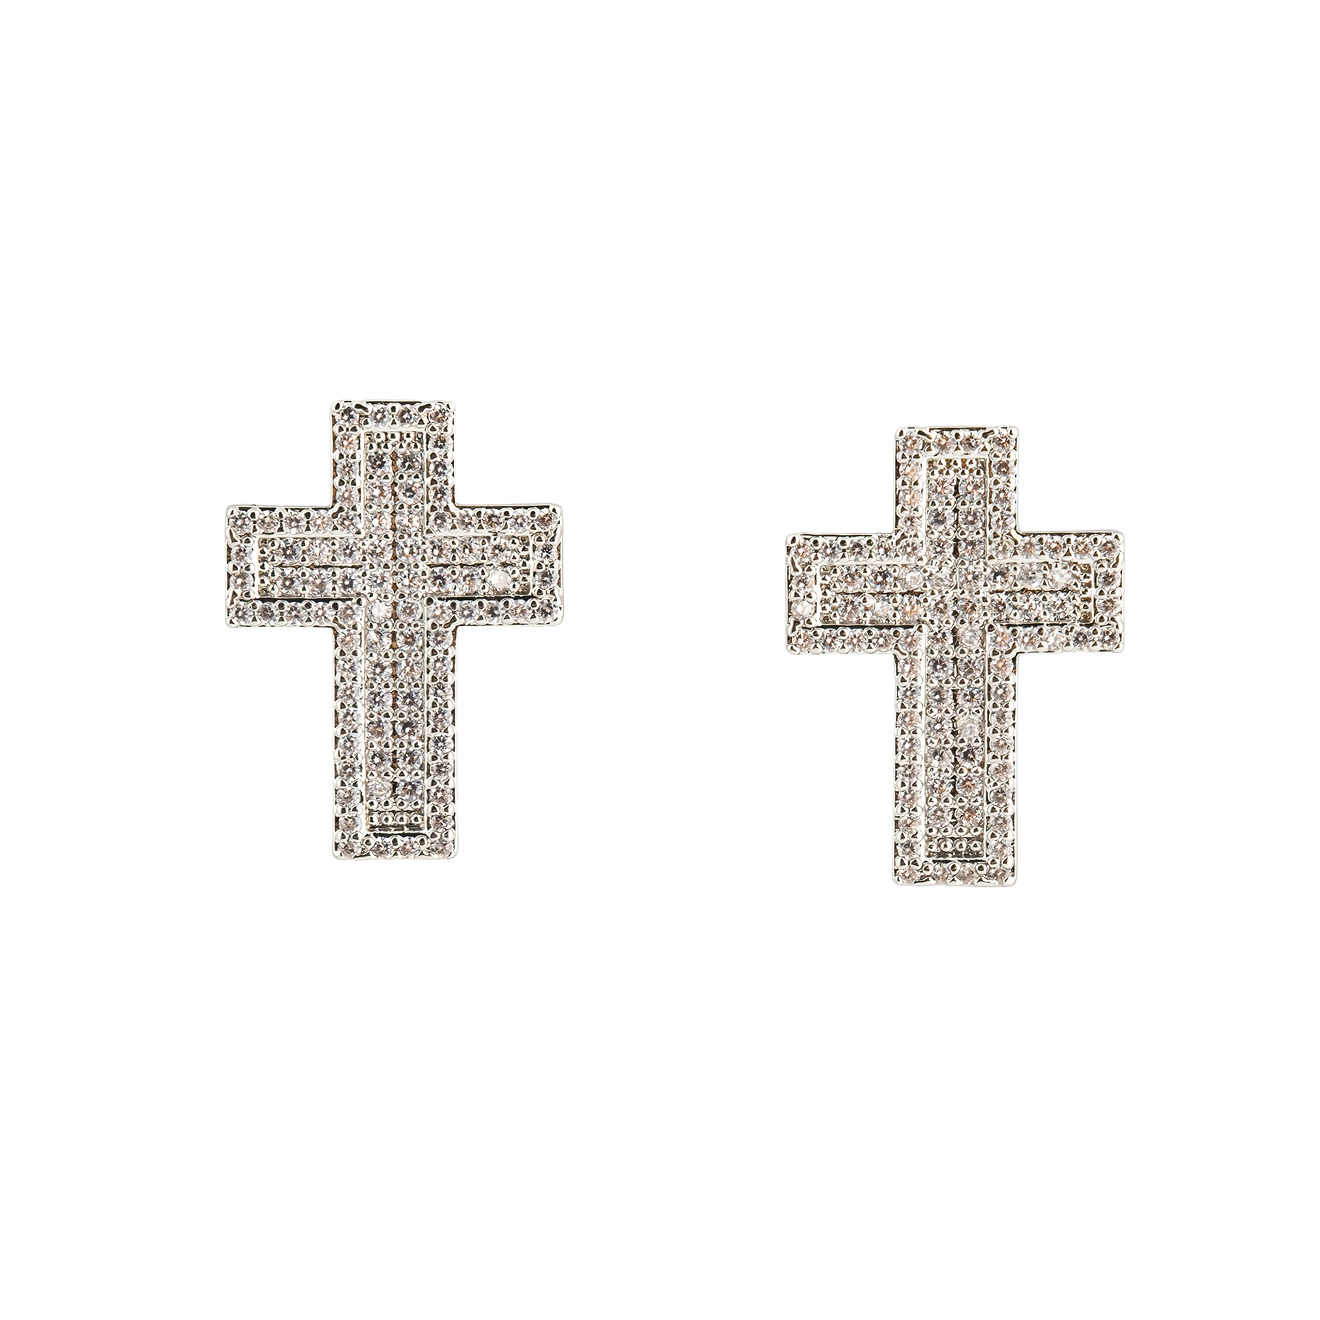 Herald Percy Серебристые серьги-кресты с кристалами цена и фото